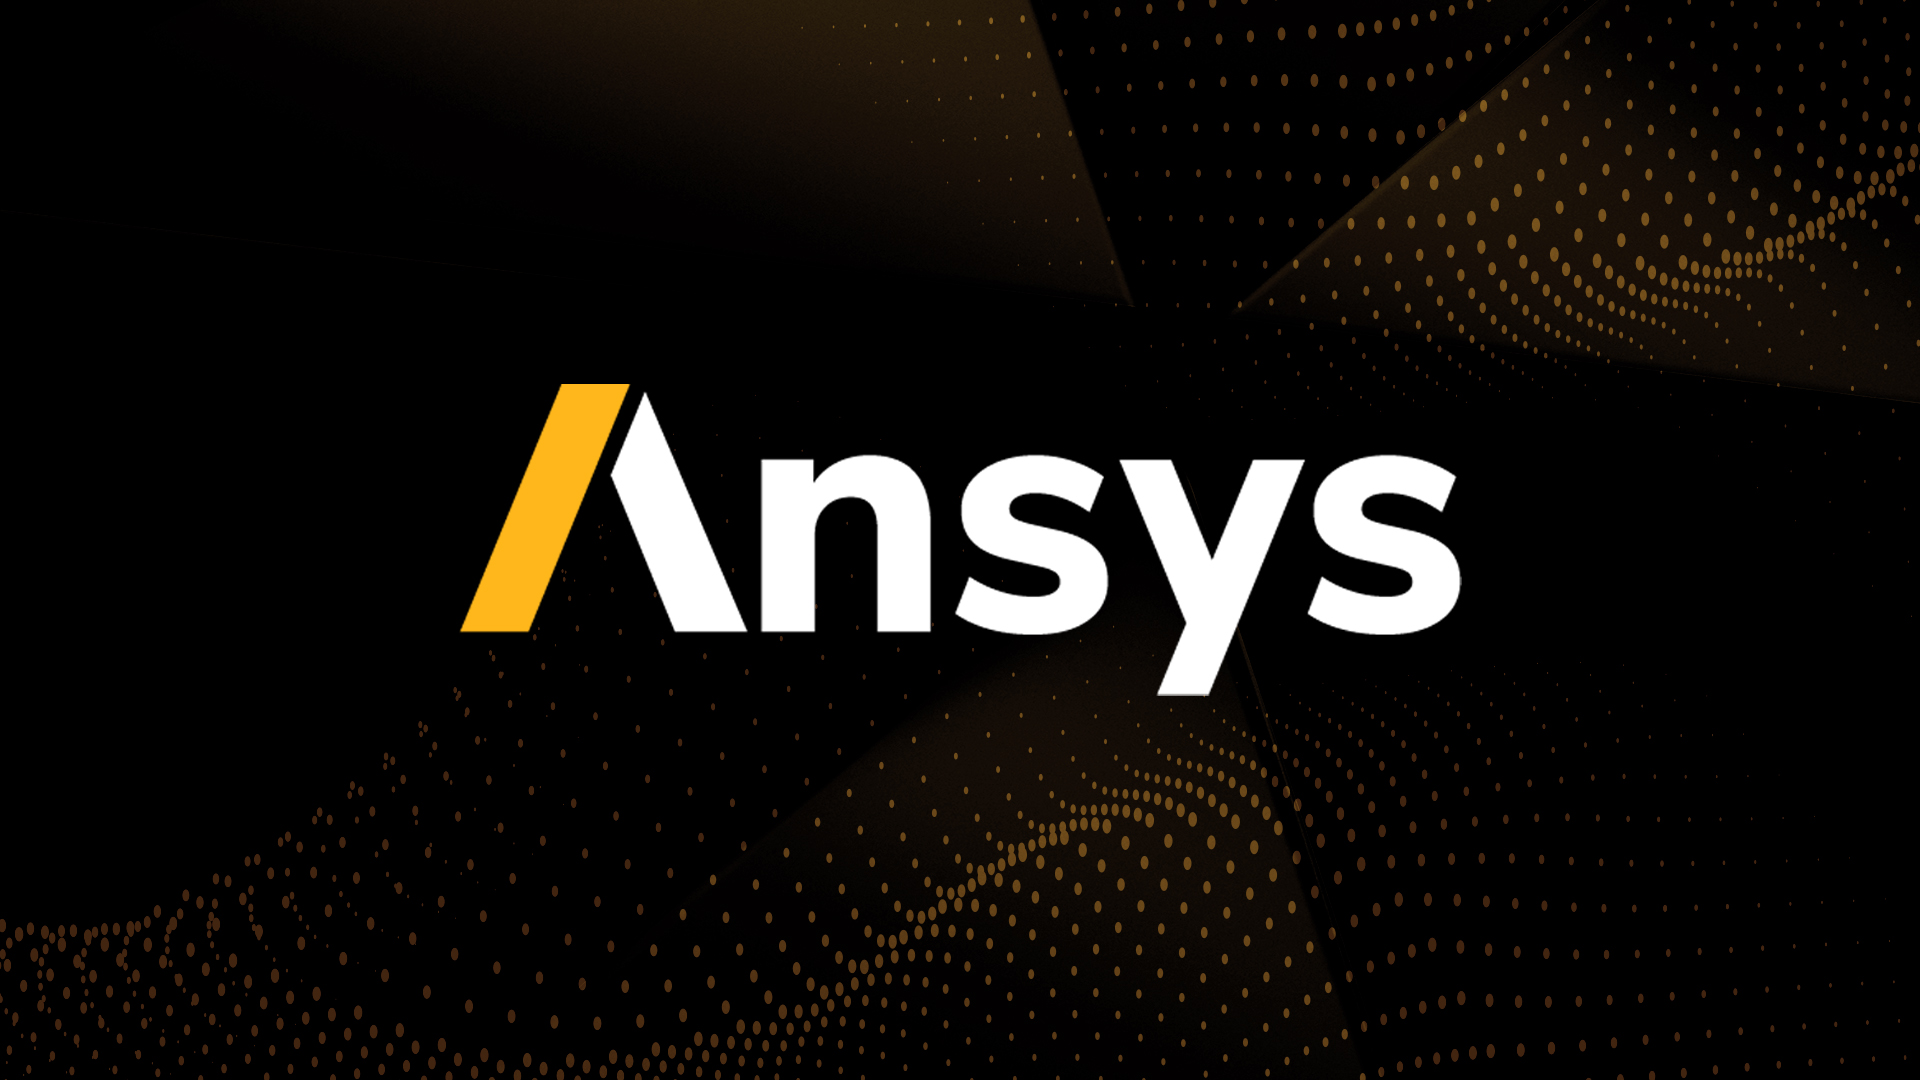 www.ansys.com